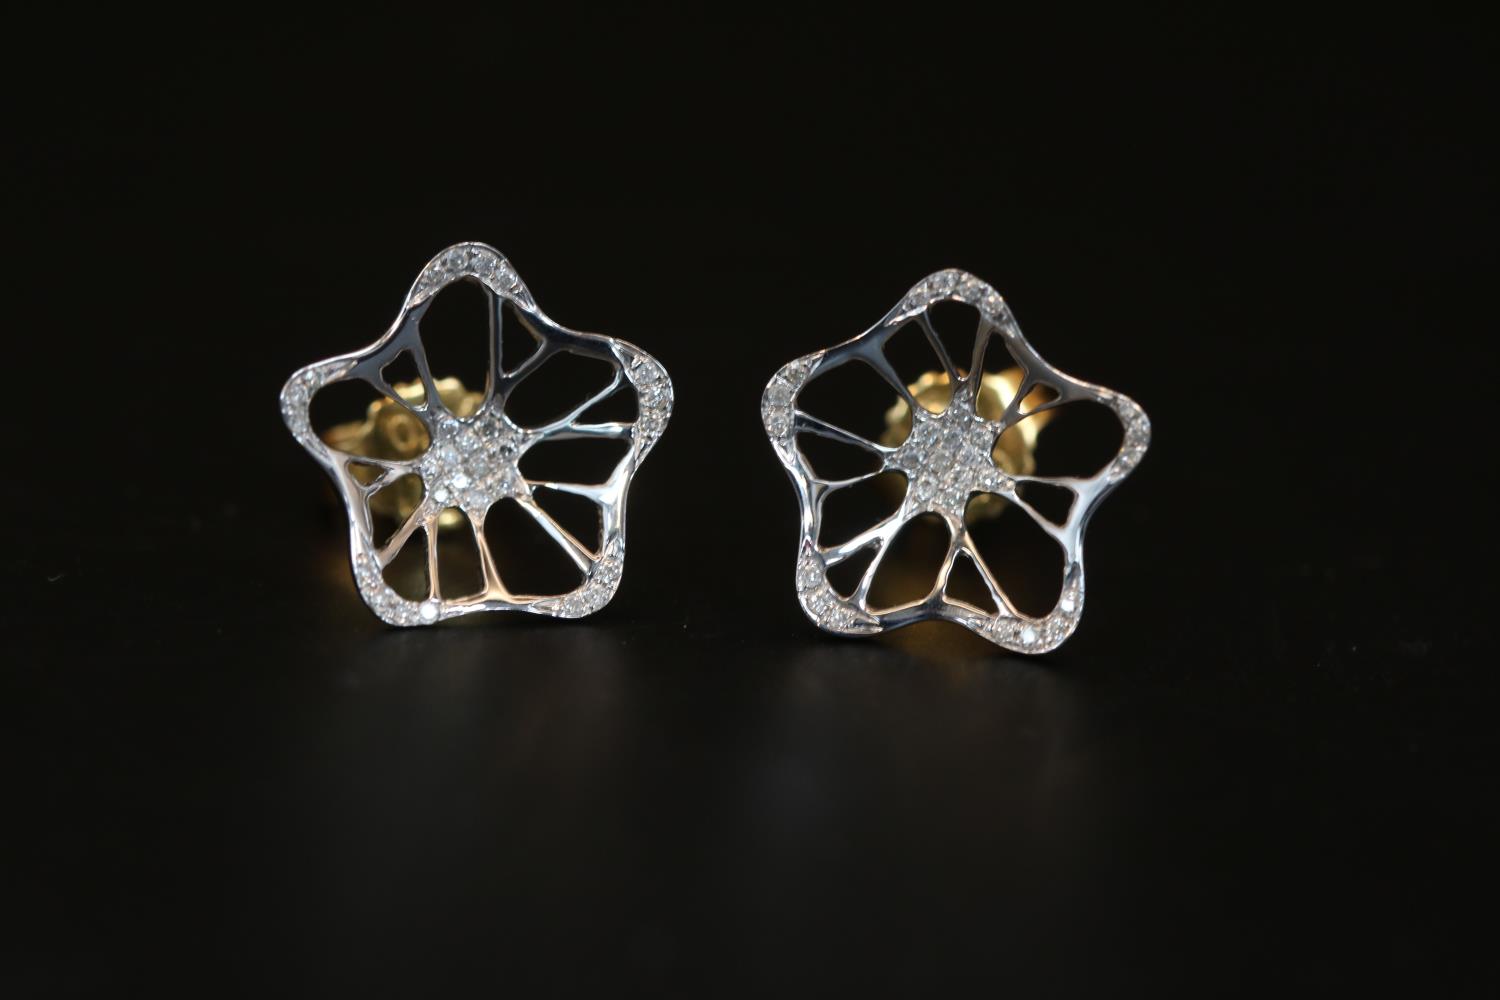 Pair of 18ct White Gold Diamond set Flower design earrings